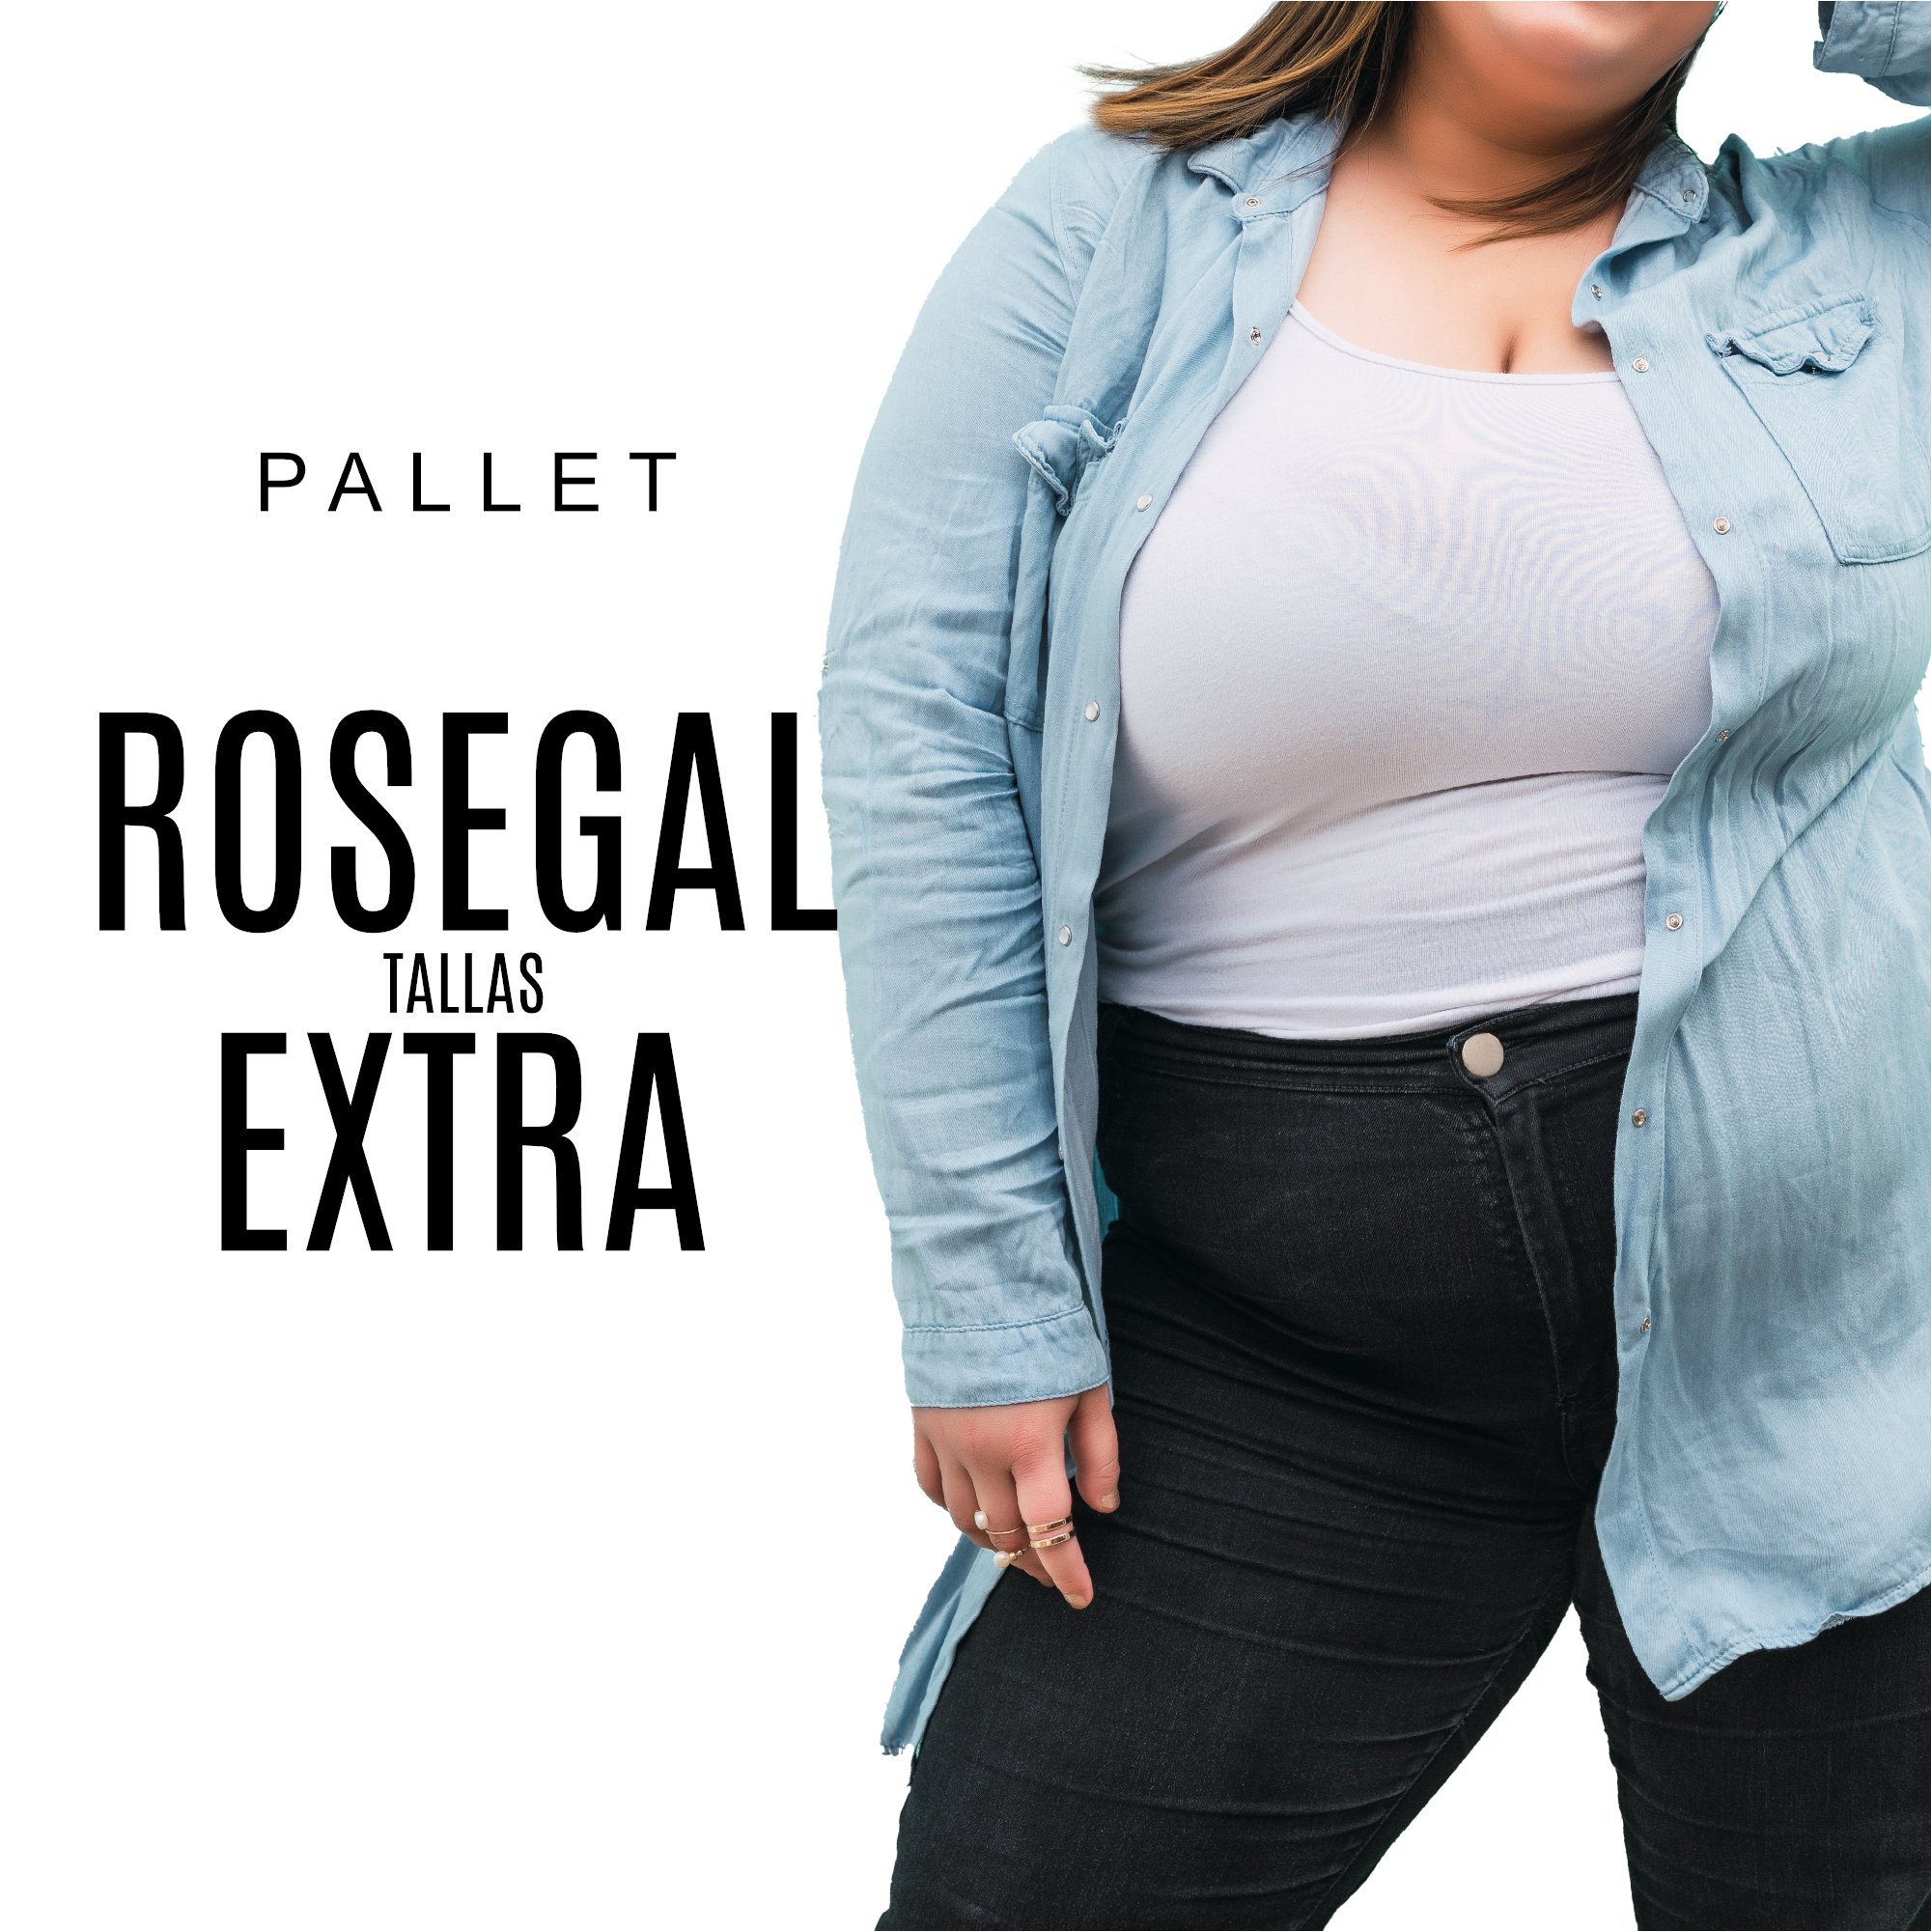 Pallet ROSEGAL T Extras – BOUTIQUE